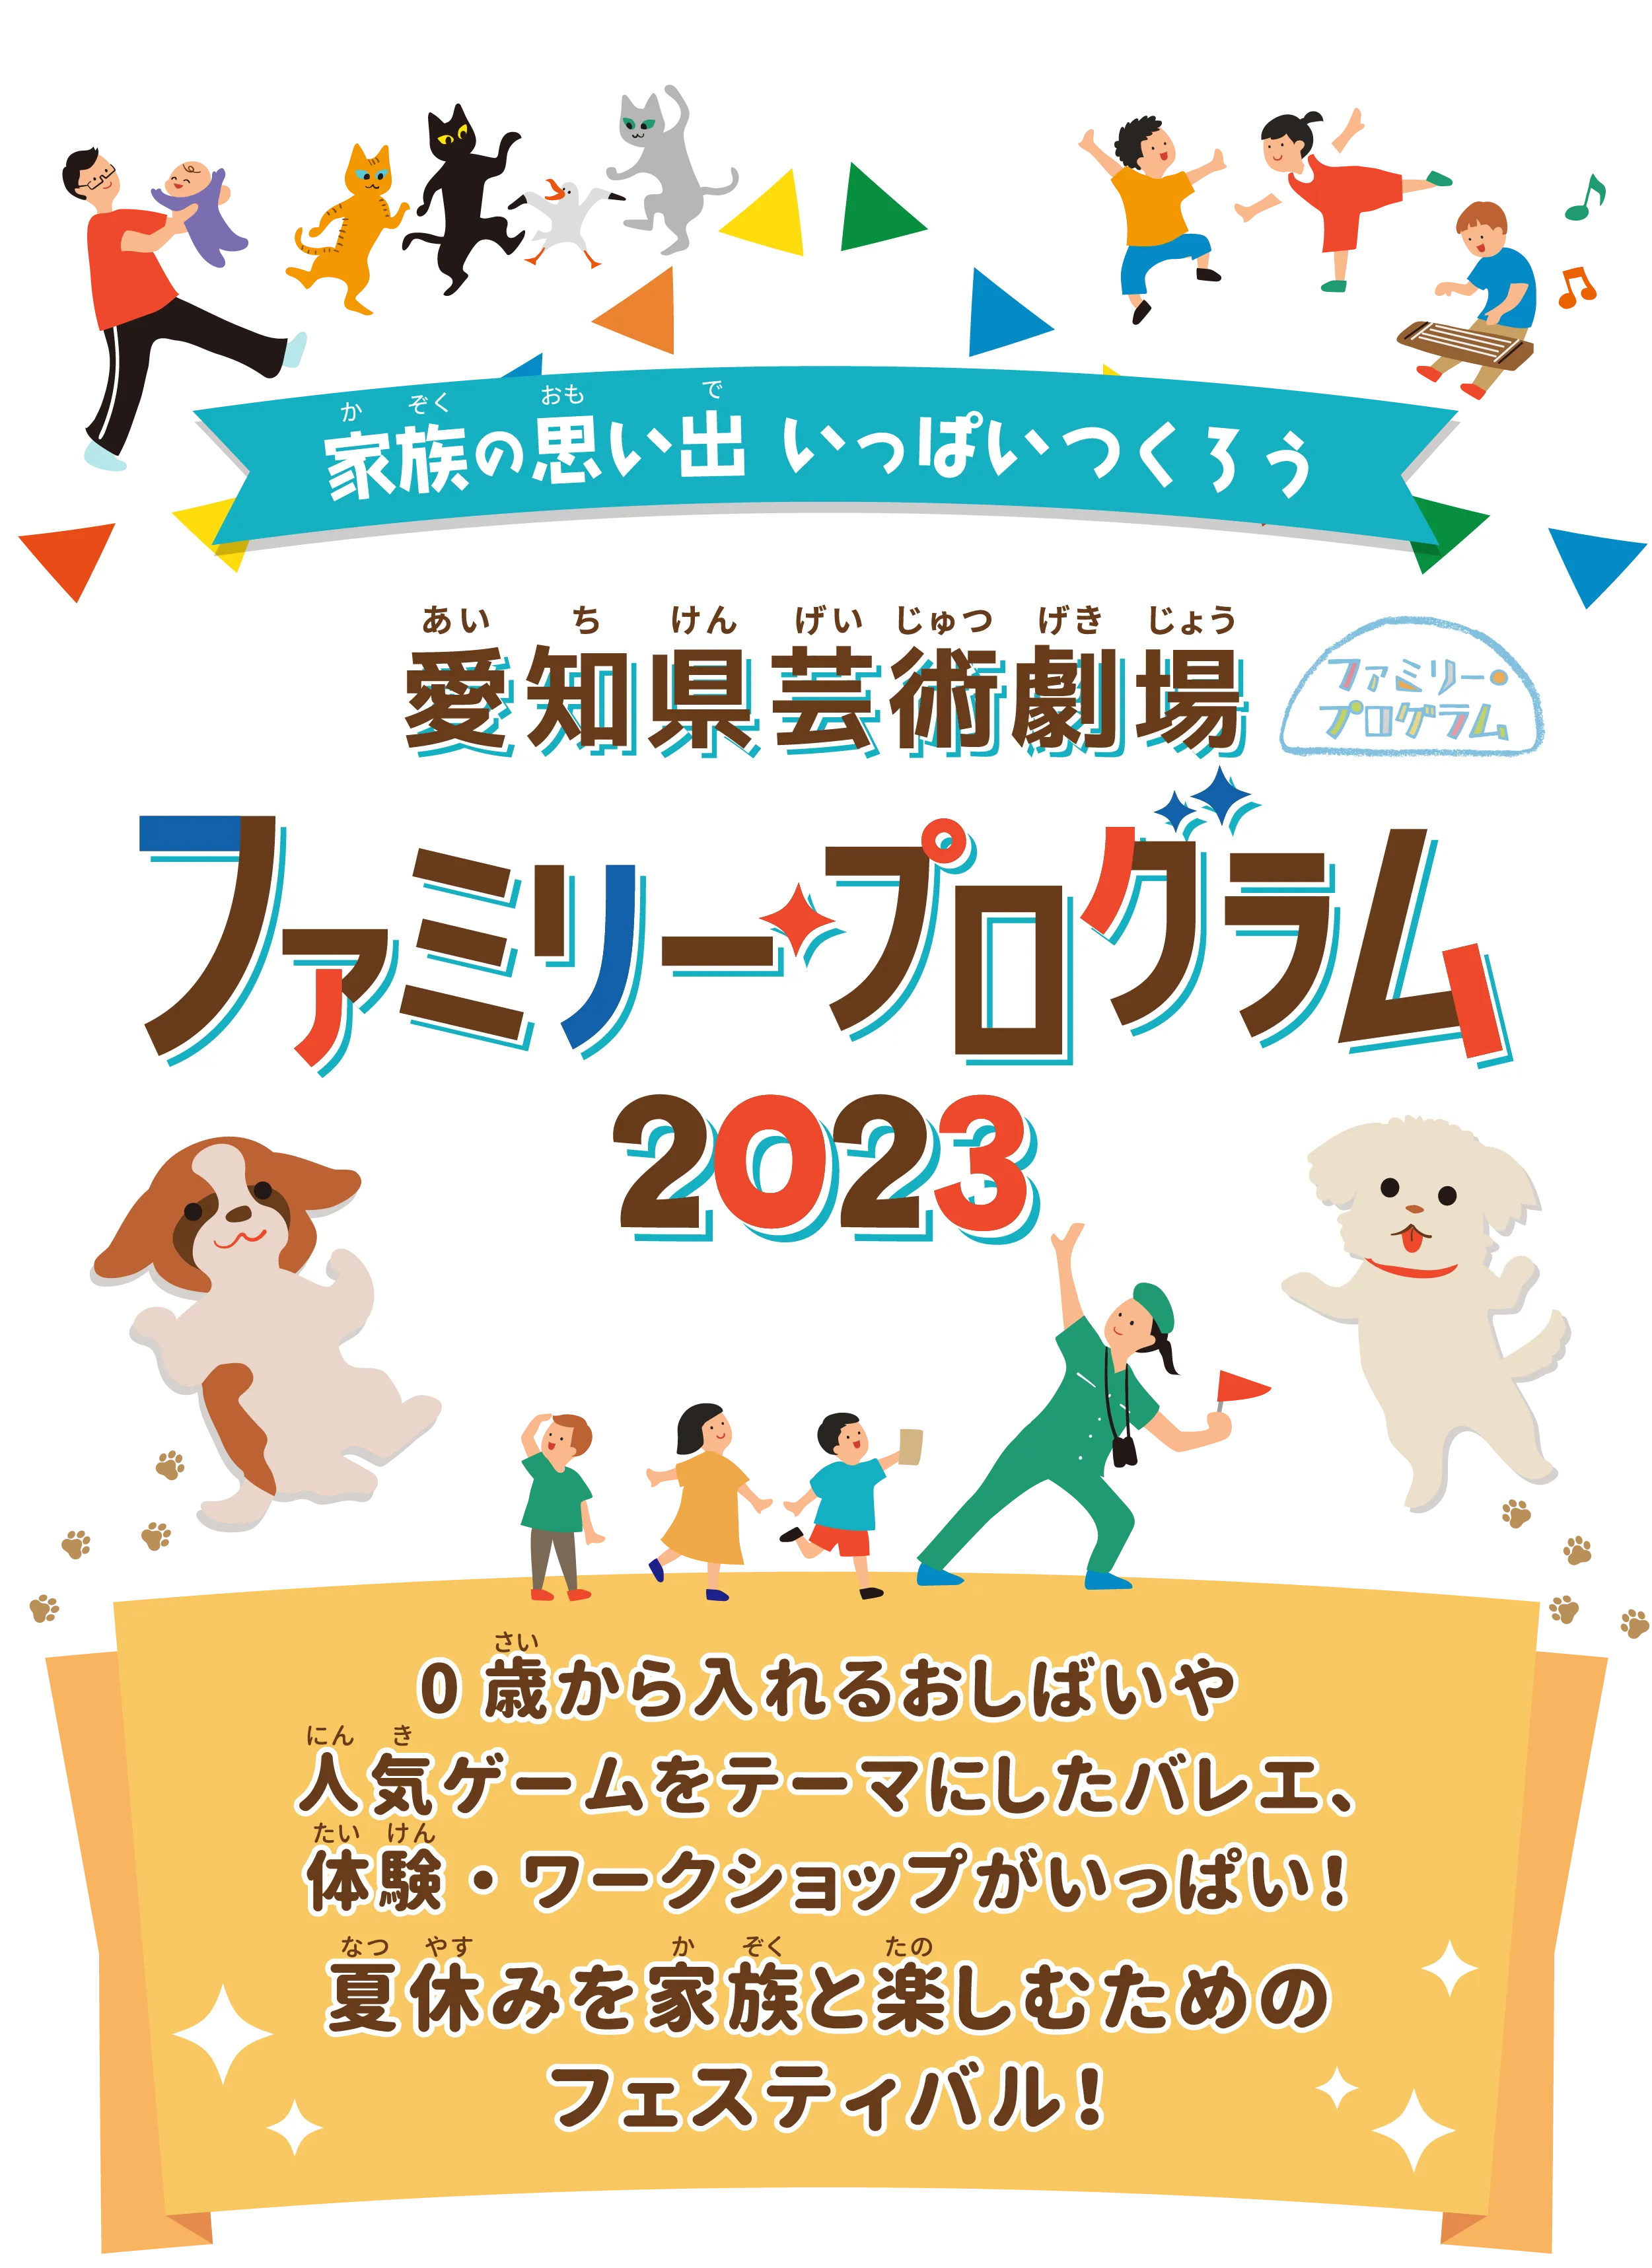 愛知県芸術劇場 ファミリー・プログラム 2023